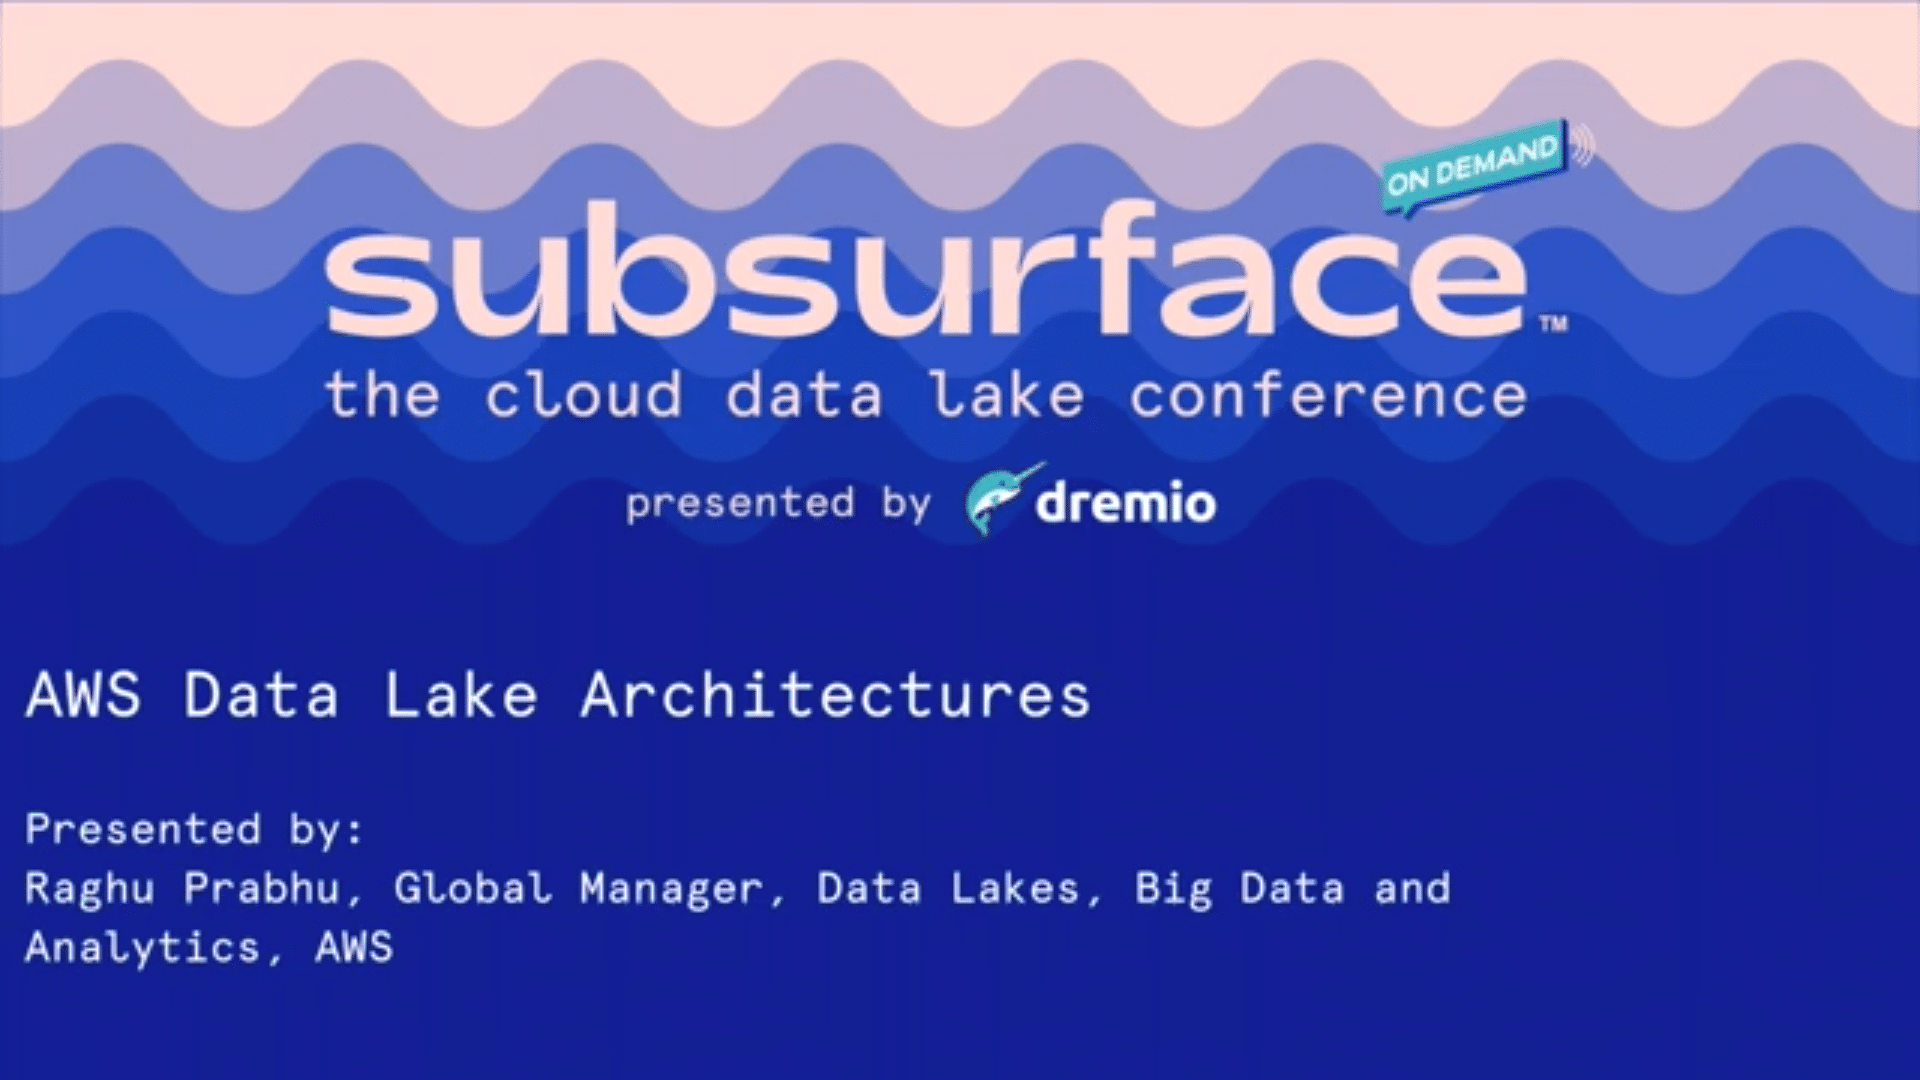 AWS Data Lake Architectures